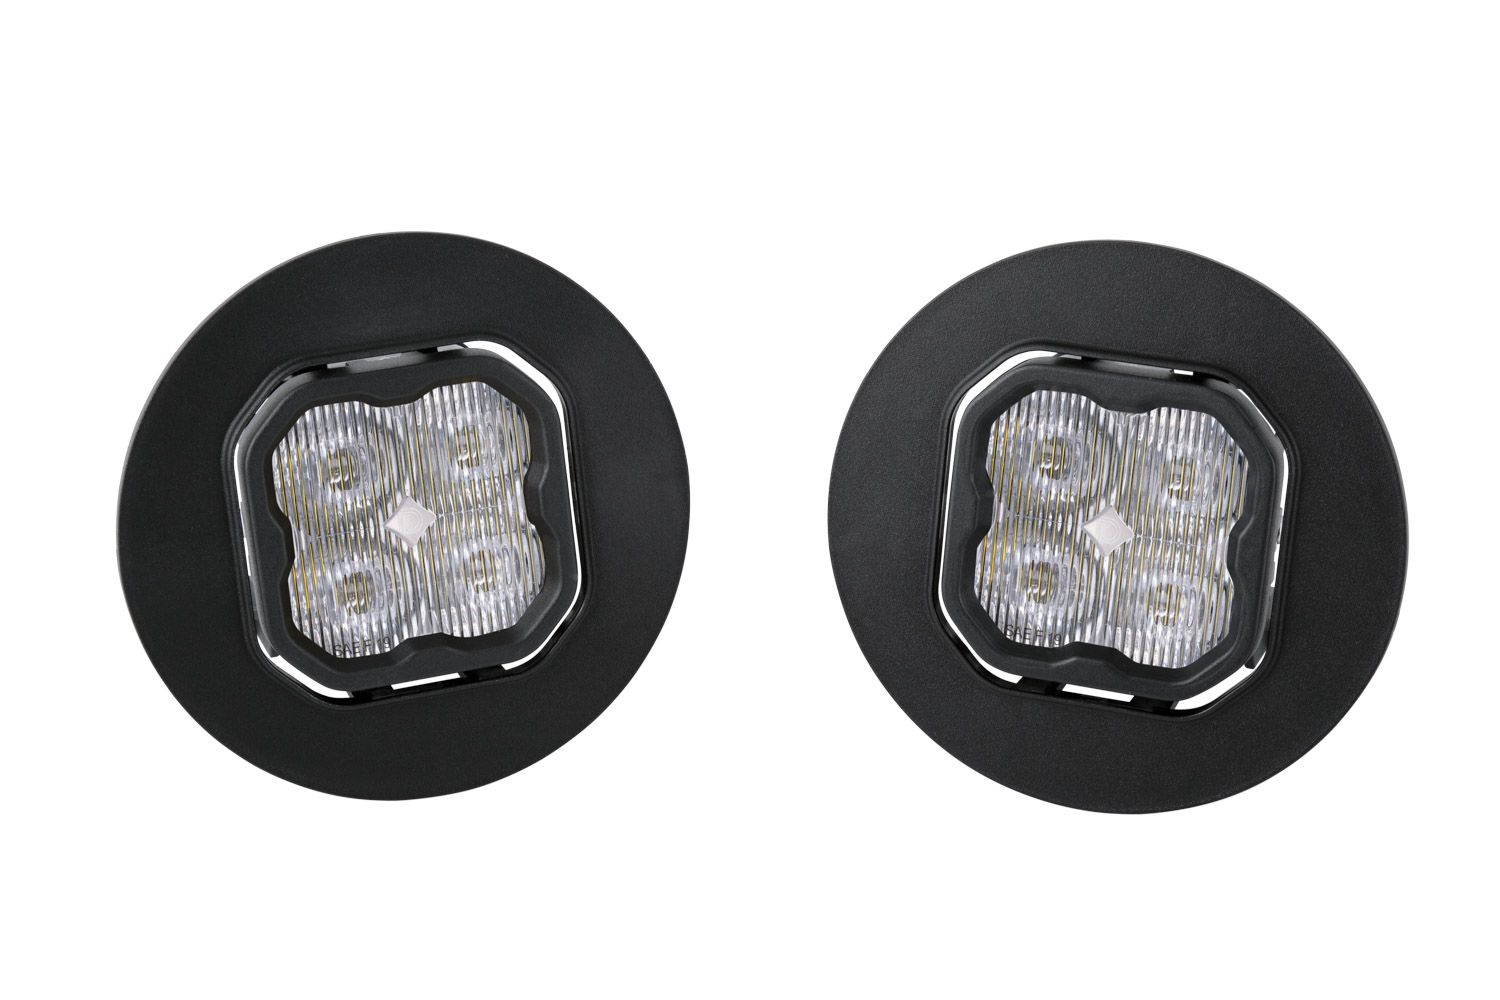 SS3 LED Fog Light Kit For 2007-2014 GMC Sierra 2500/3500